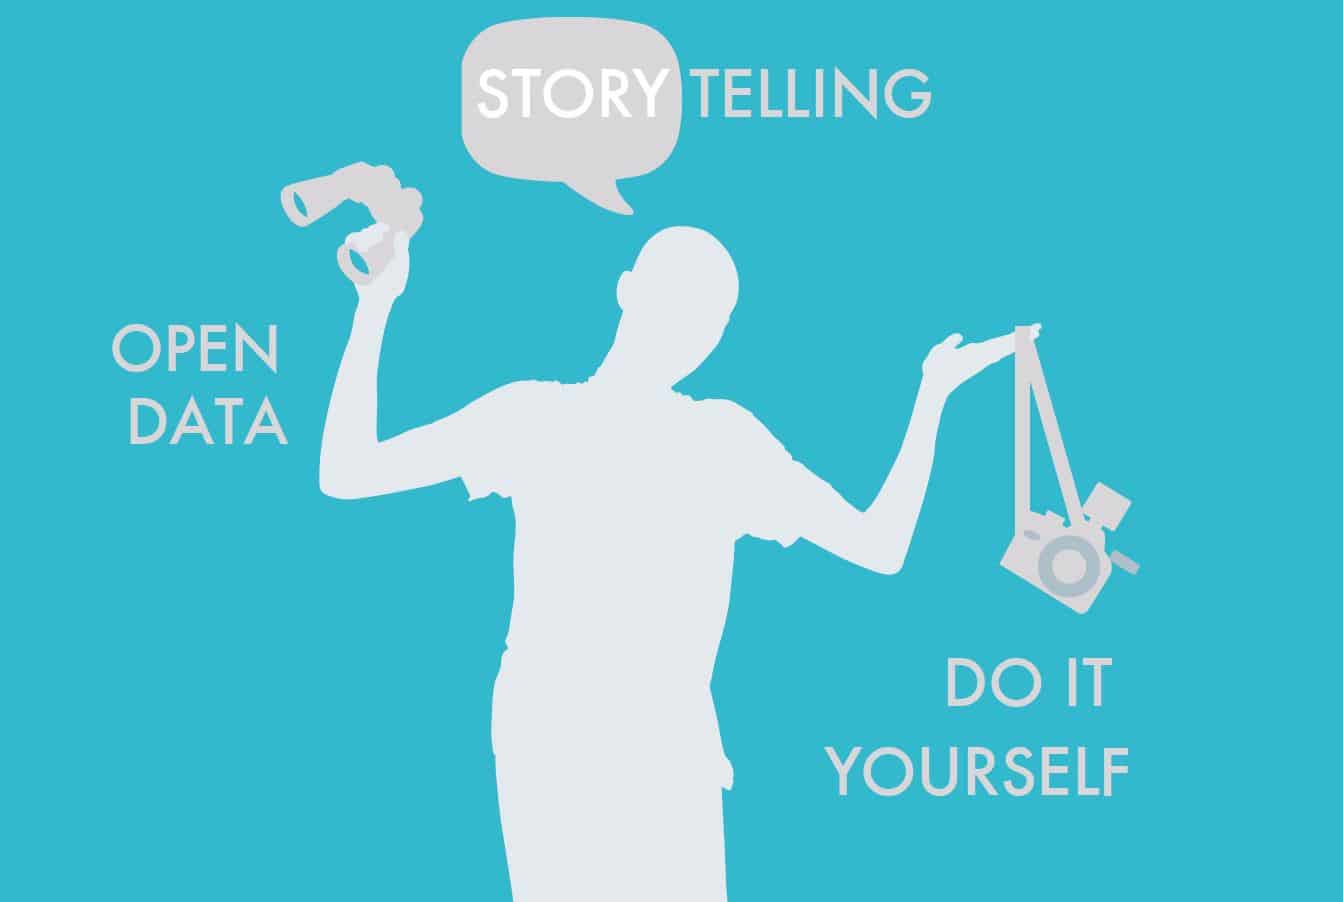 open data storytelling et do it yourselt